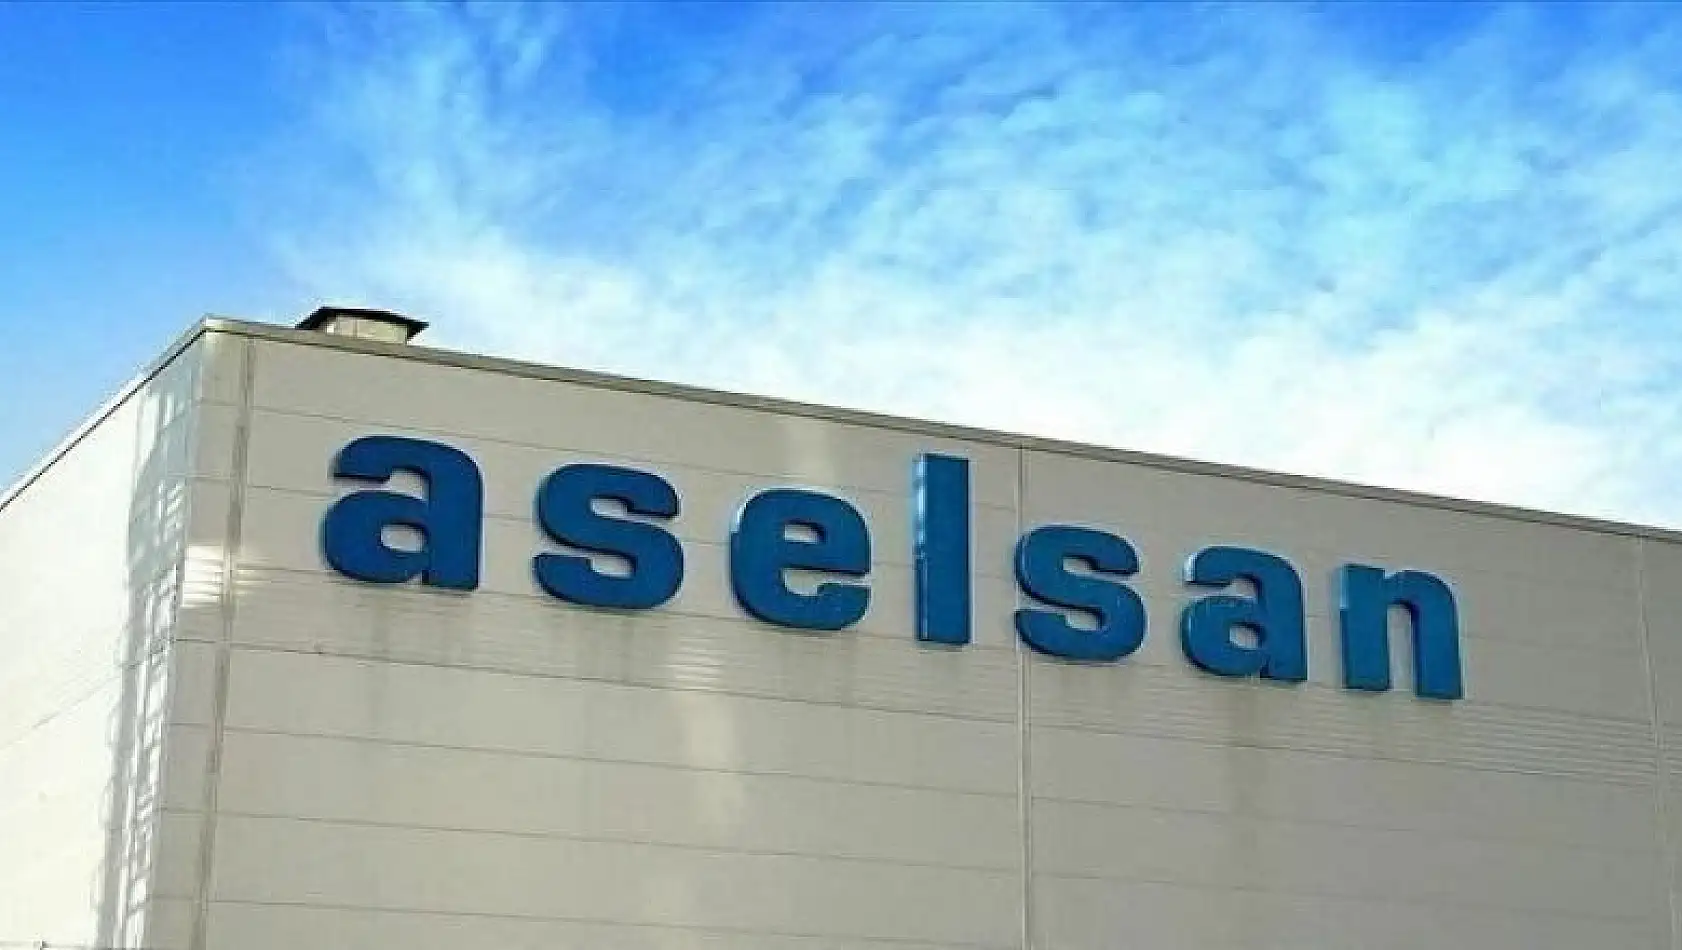 ASELSAN, Birleşik Arap Emirlikleri'ne satılacağı iddialarını yalanladı